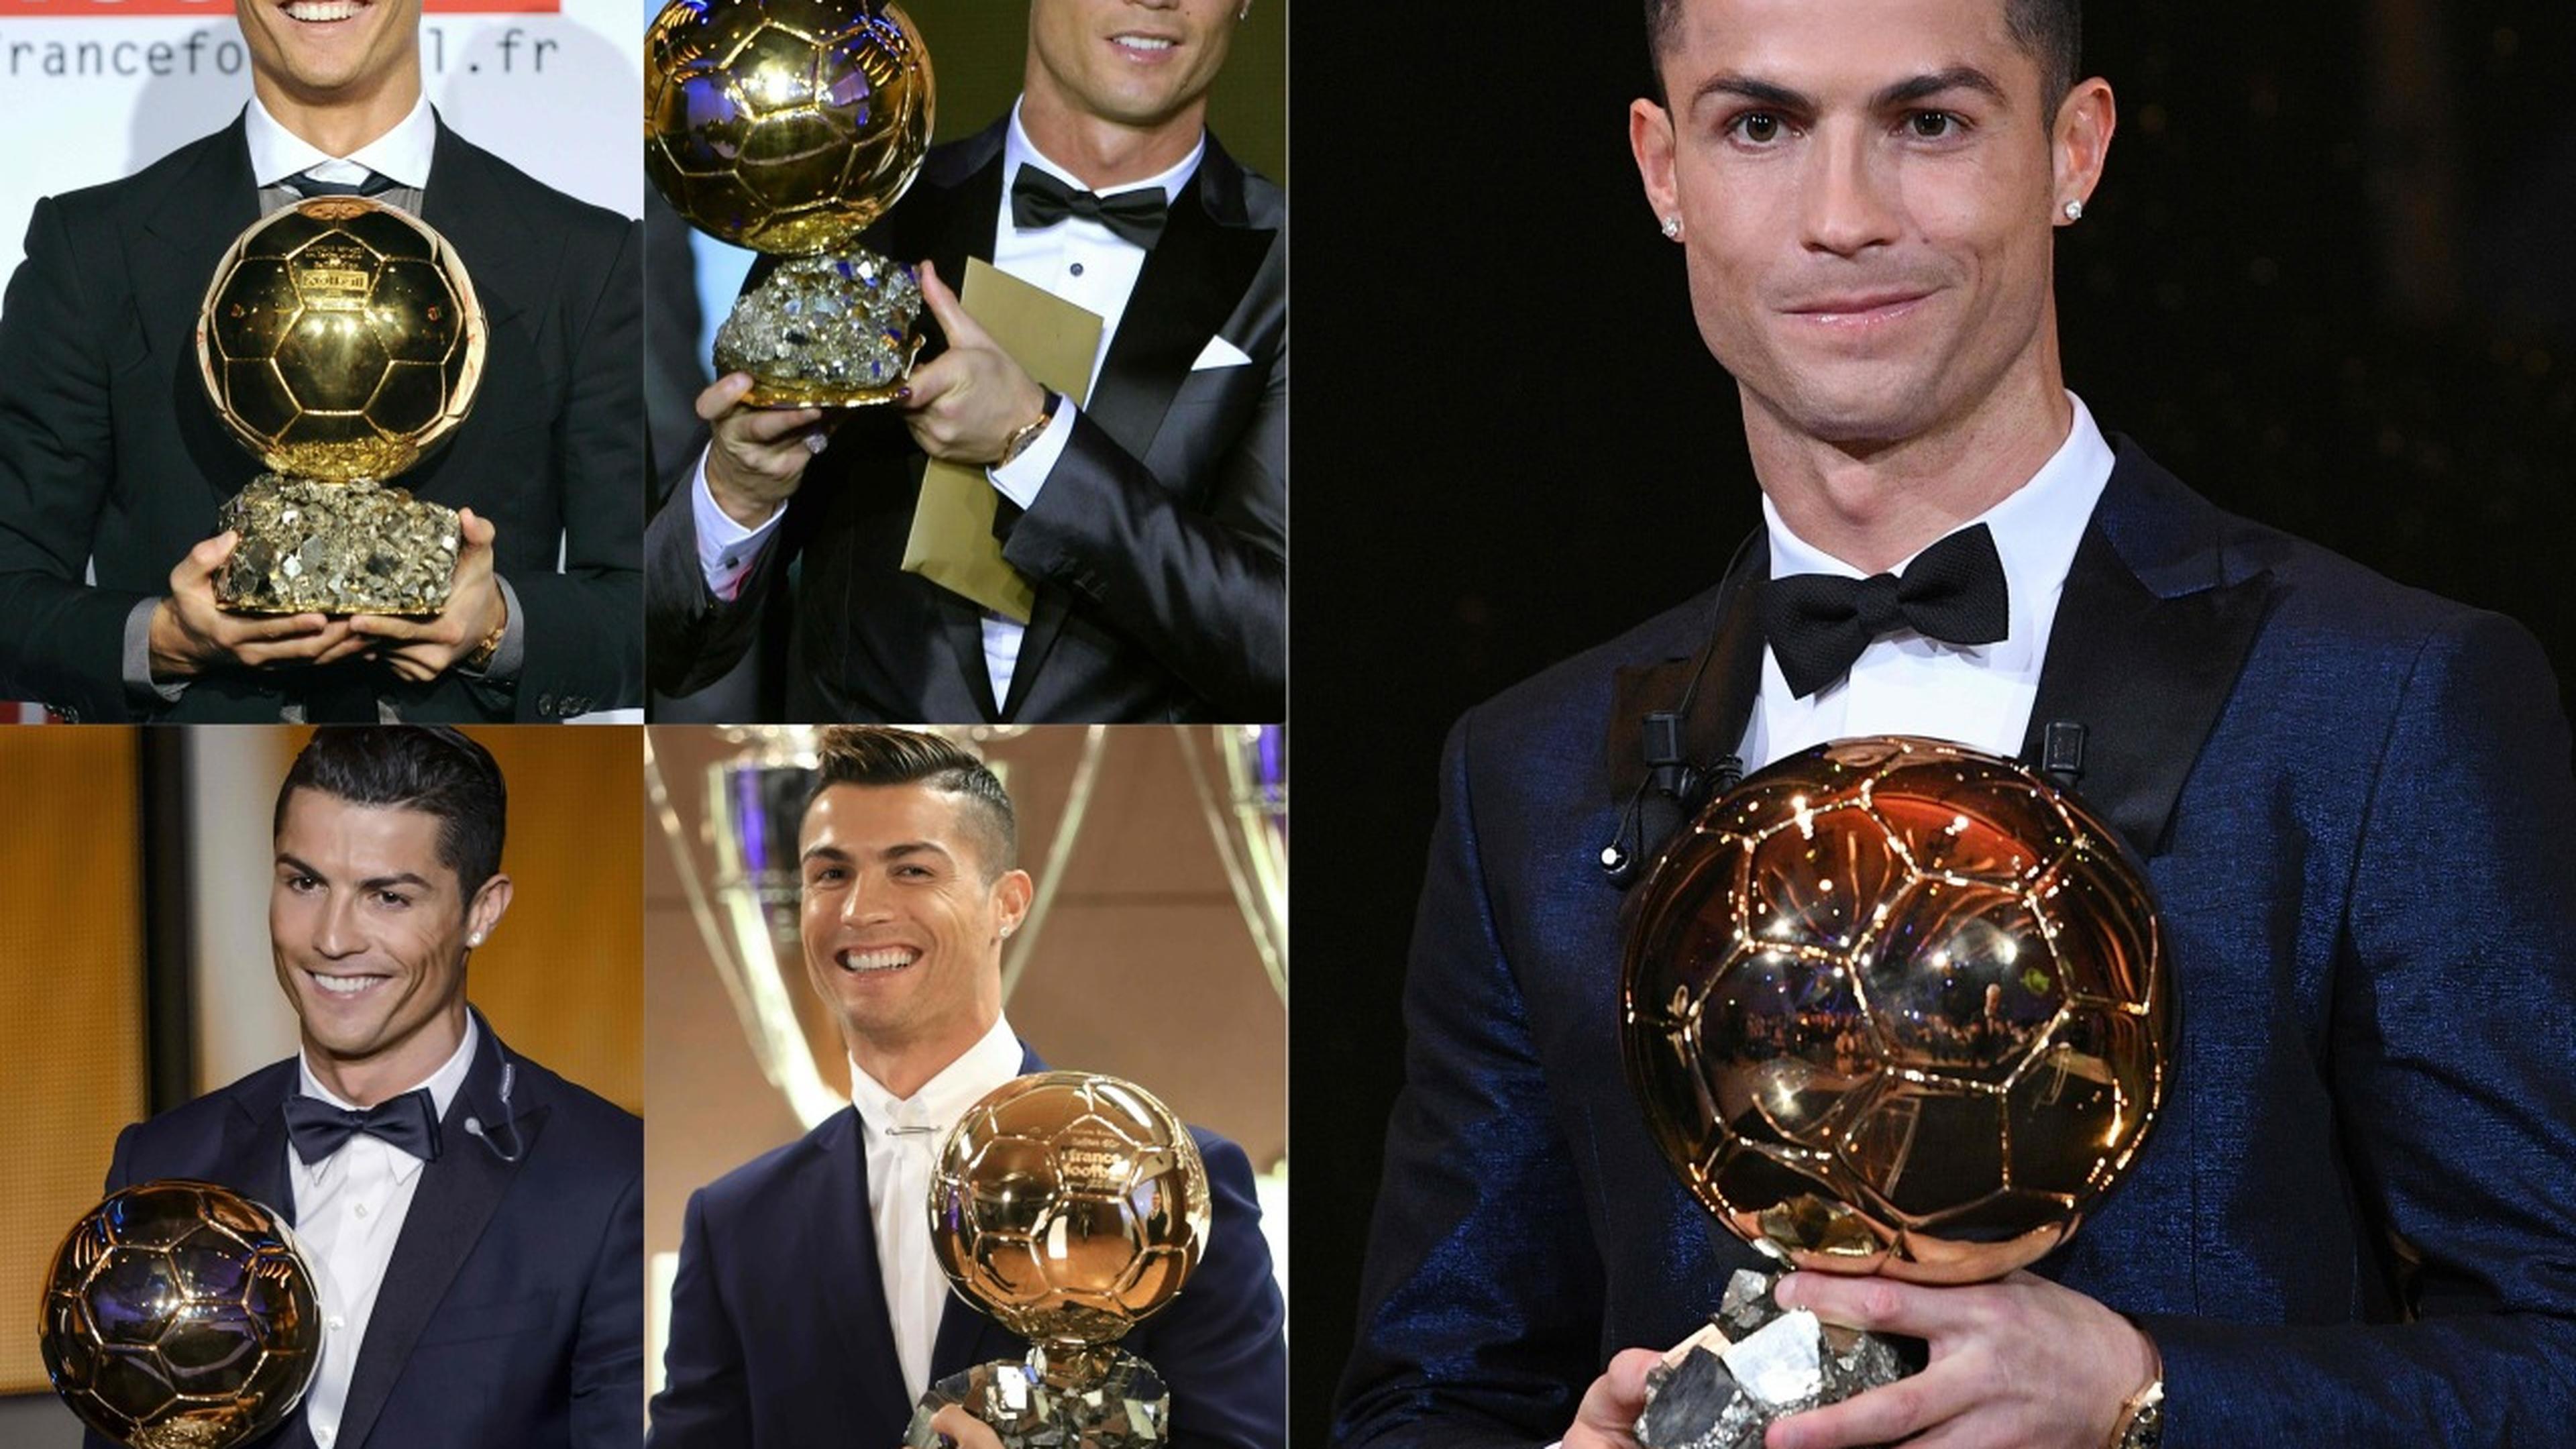 Cristiano Ronaldo é o vencedor do Bola de Ouro 2013 da Fifa